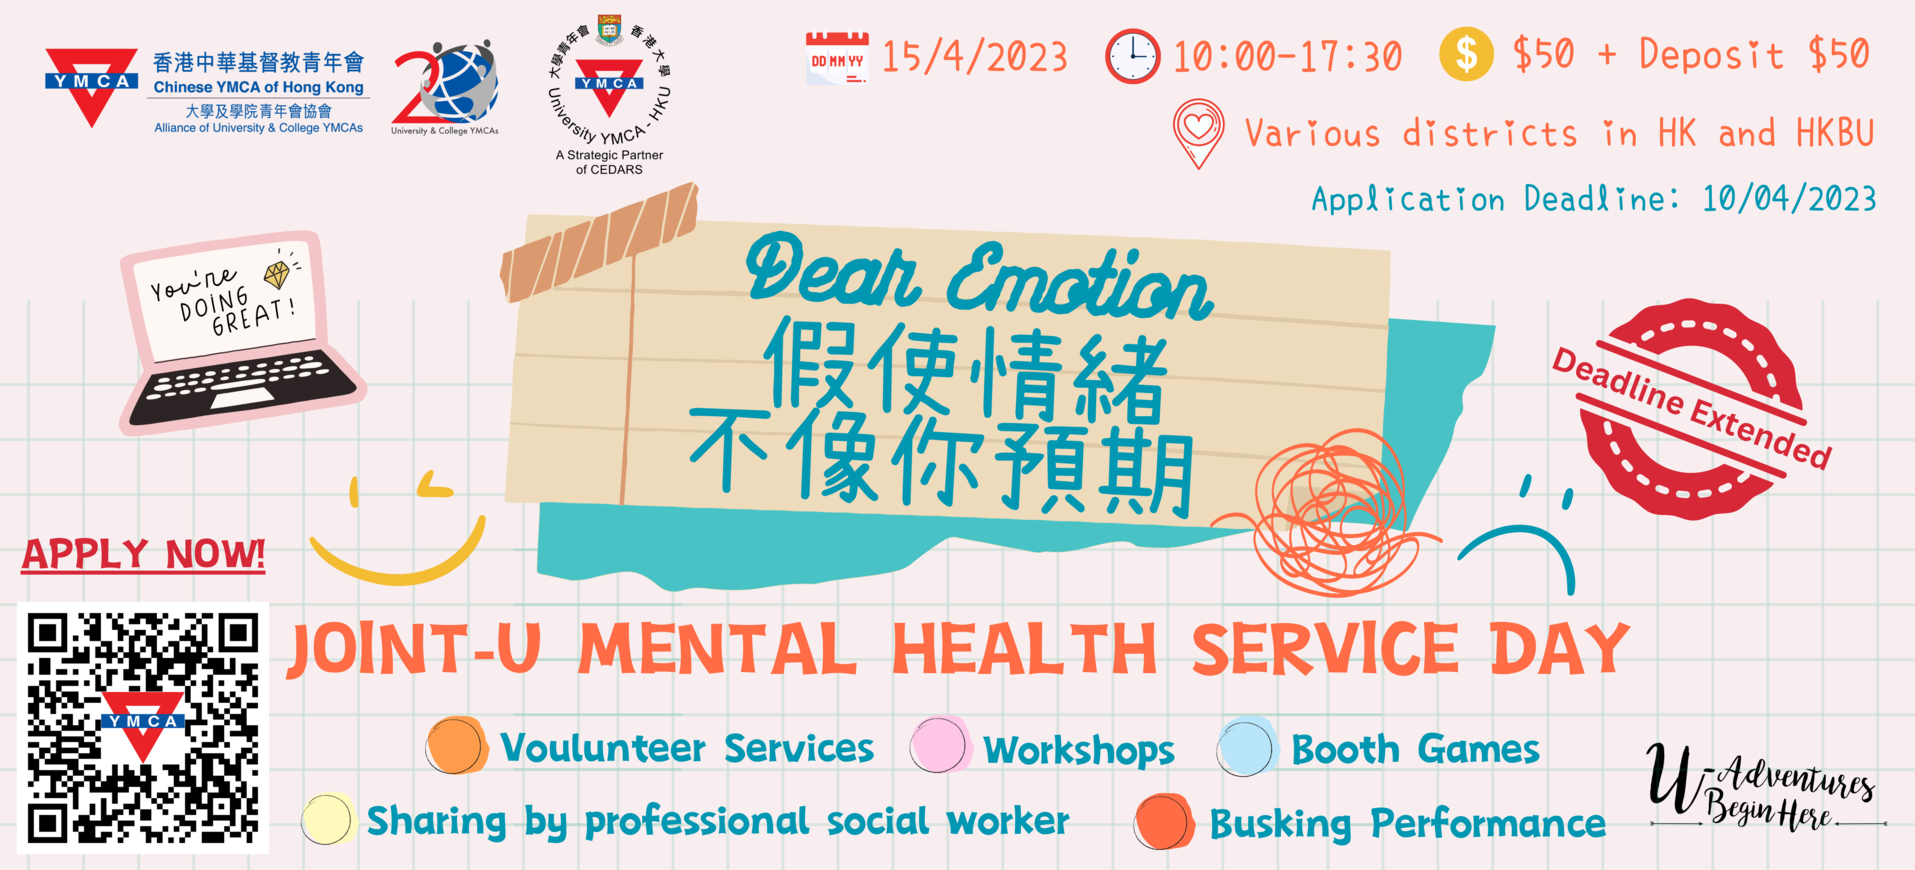 Uni-Y (HKU) "Dear Emotion" Mental Health Service Day